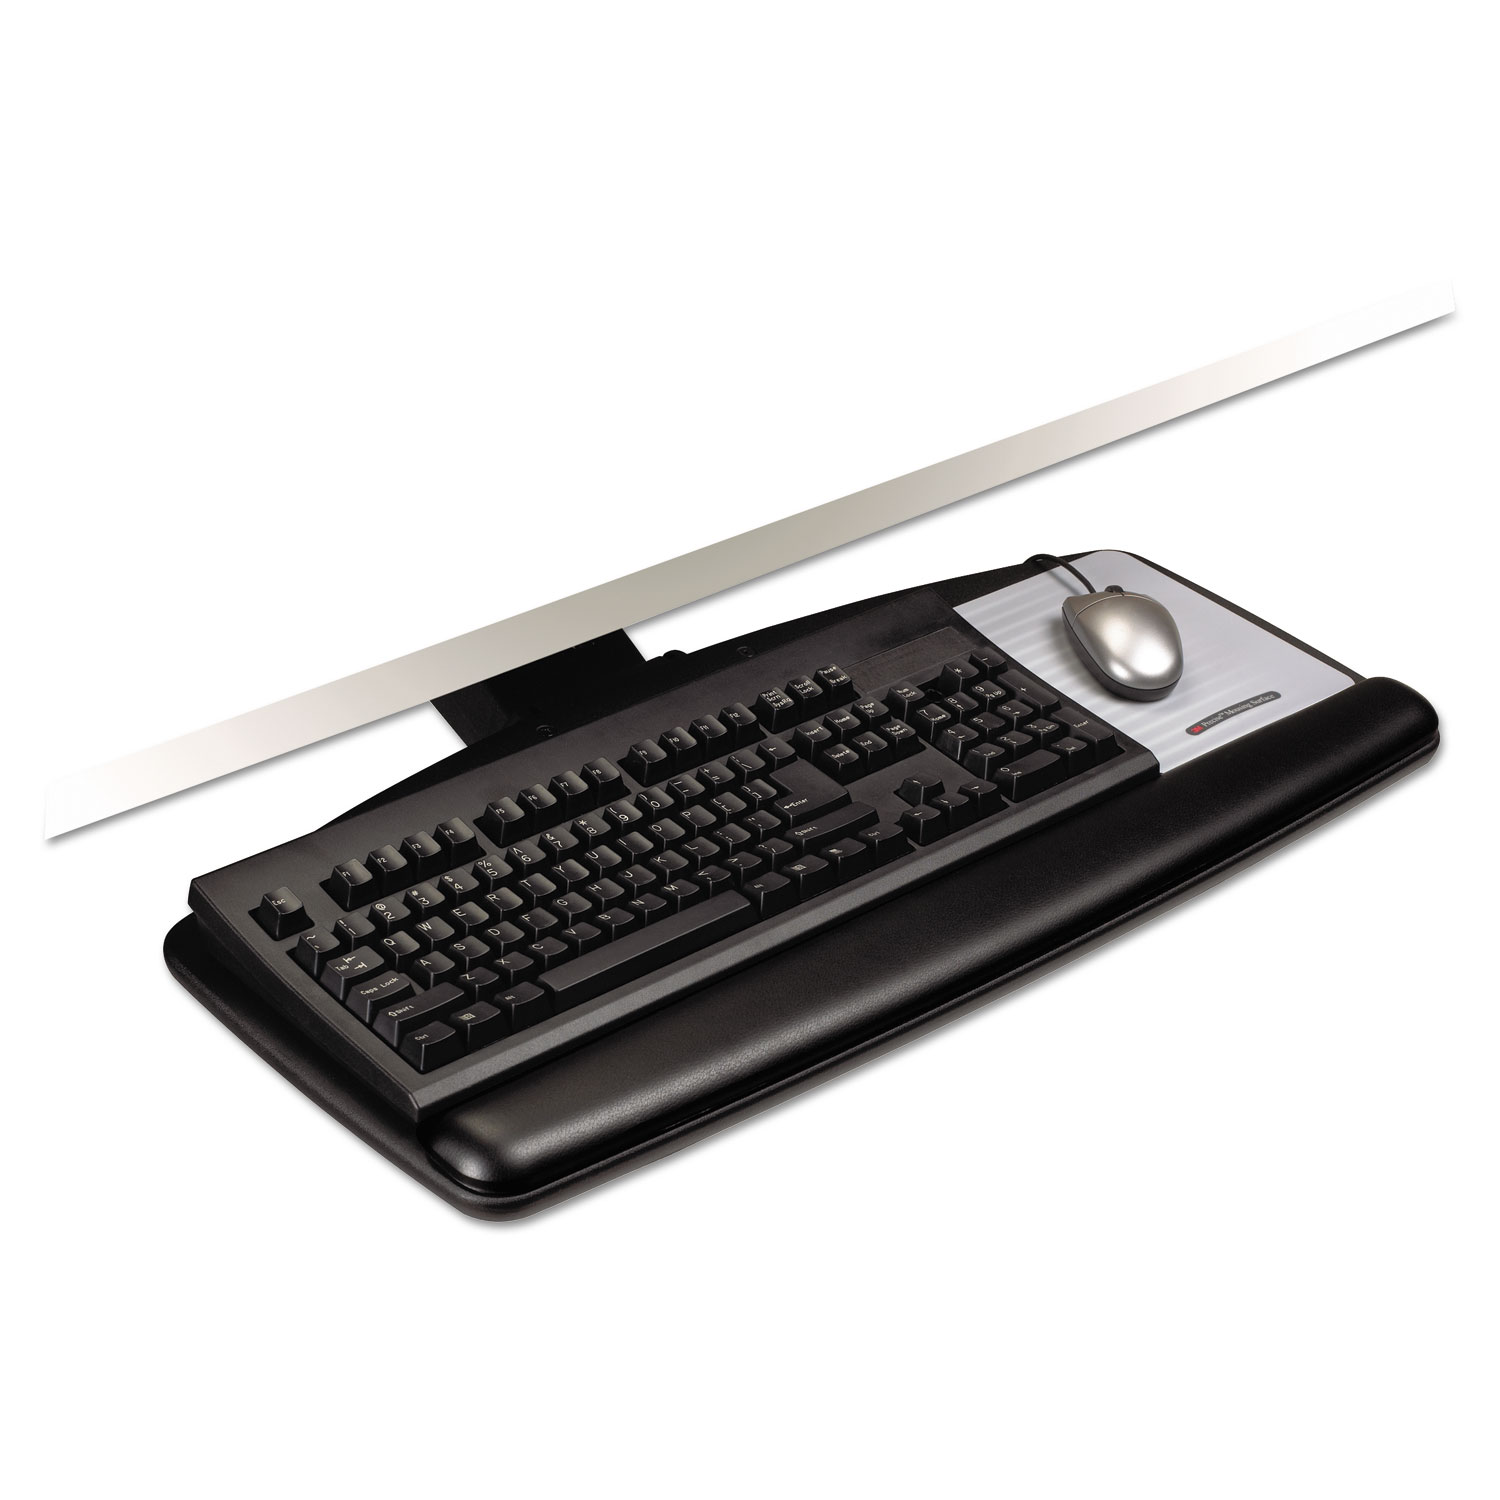  3M AKT60LE Knob Adjust Keyboard Tray With Standard Platform, 25.2w x 12d, Black (MMMAKT60LE) 